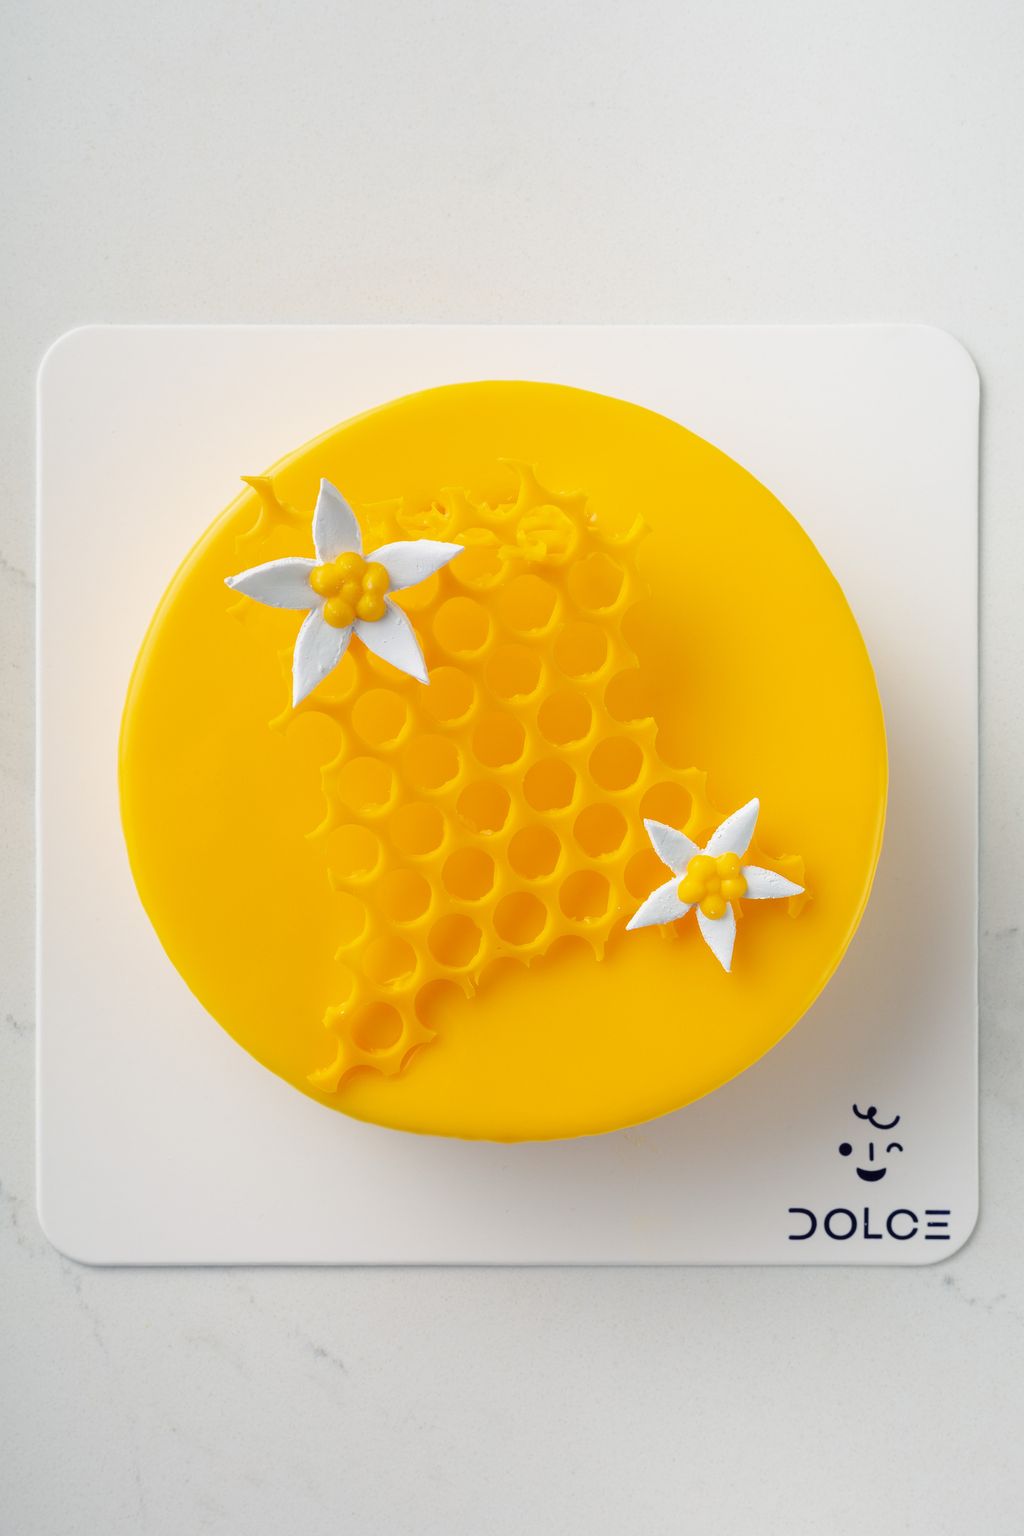 Dolce_Whole Cake-8